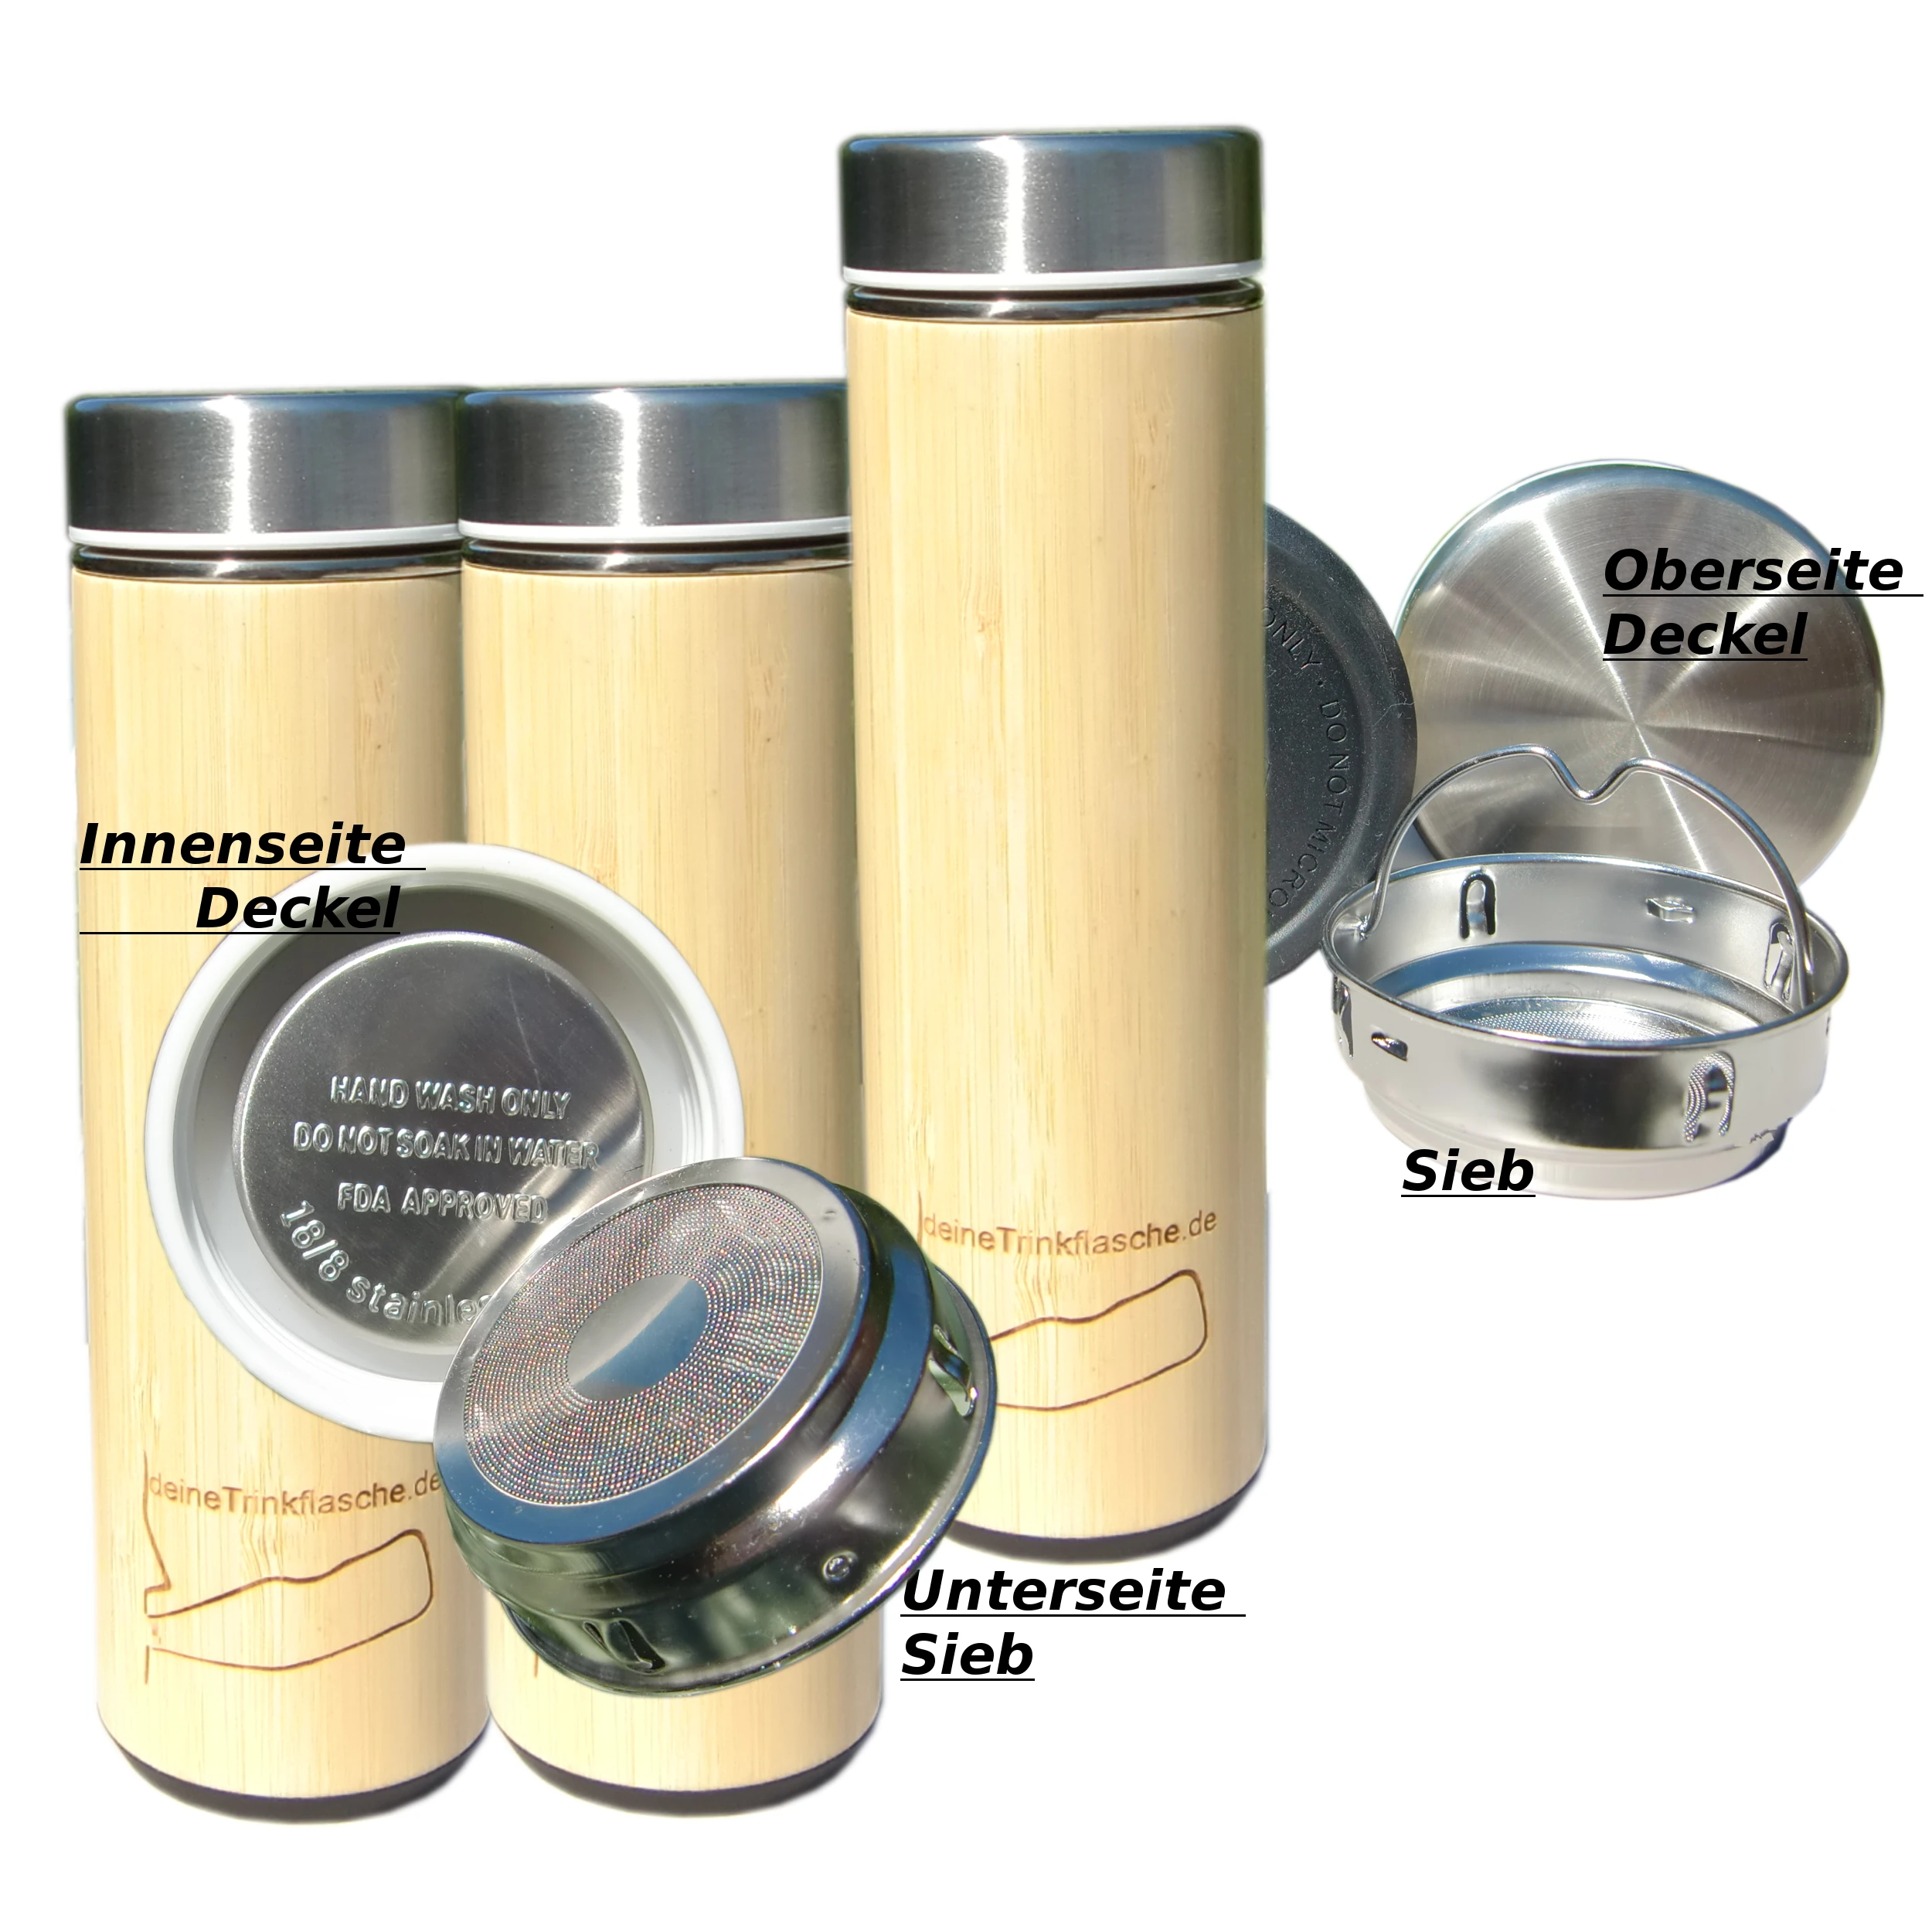 Thermosflasche mit Holzmantel, es sind die Deckel von innen,außen und das enthaltene Sieb zu sehen